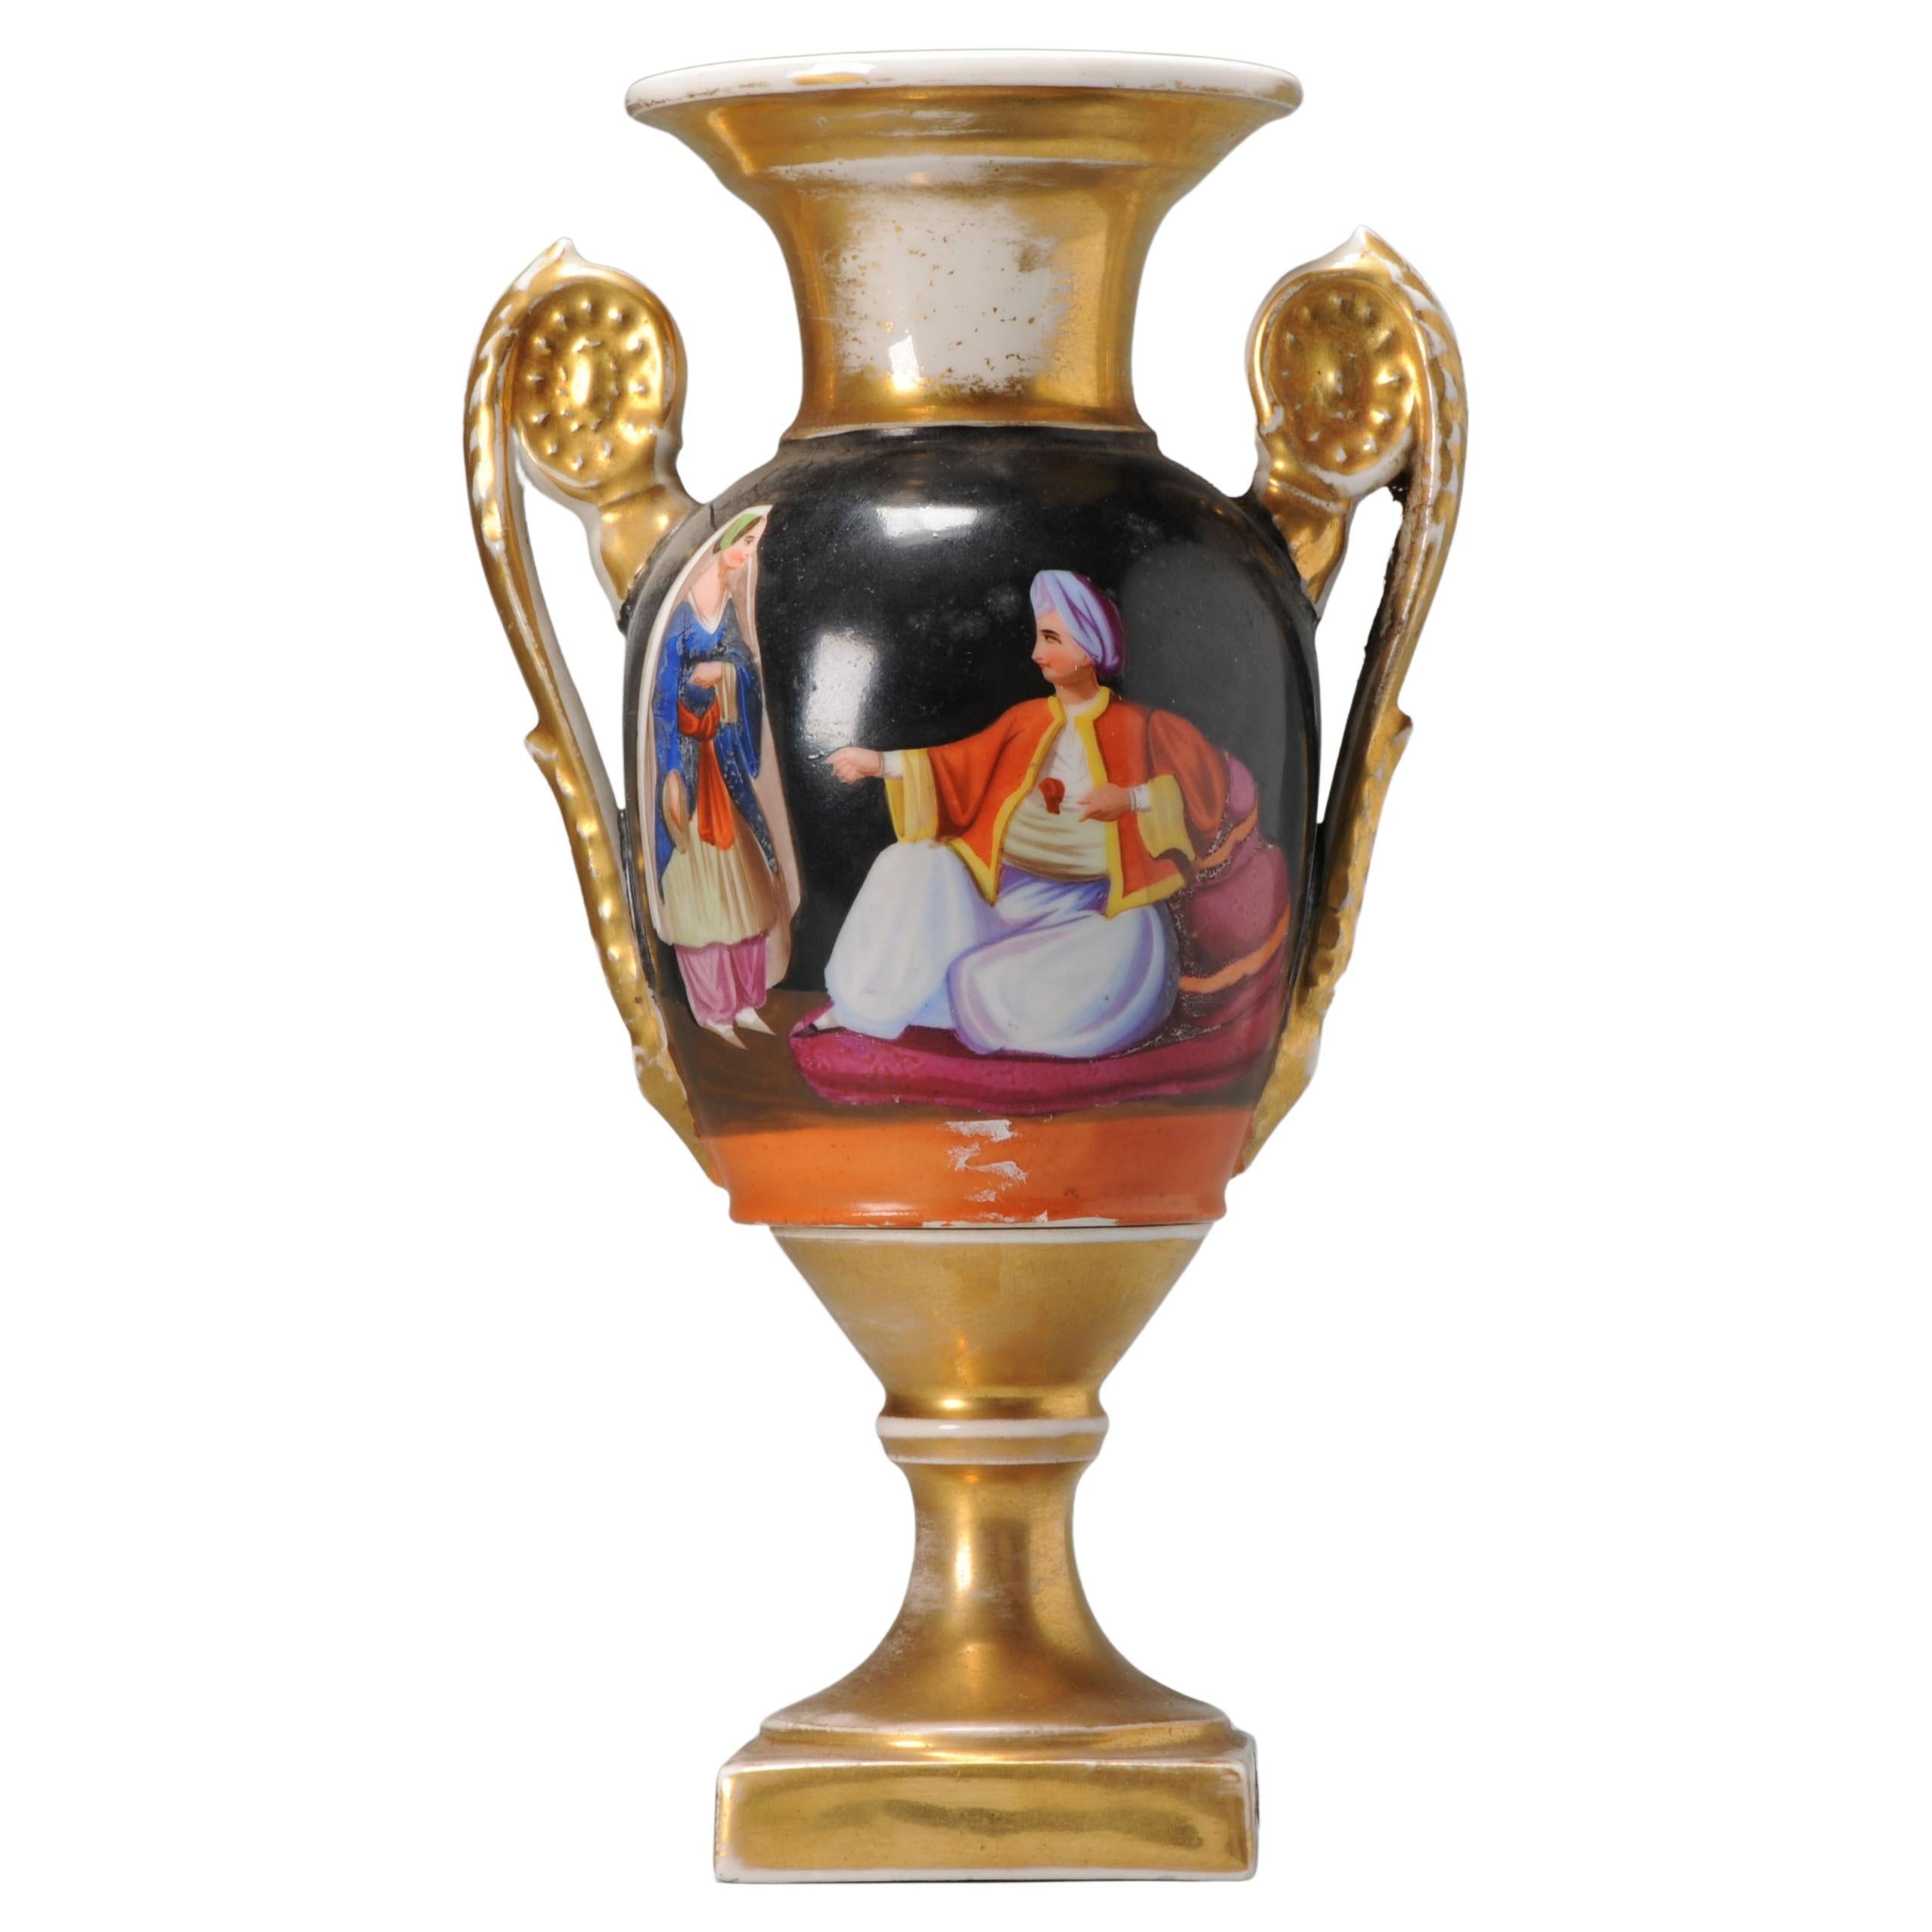 Antique 19th Century Paris France Porcelain Vase in Sevres Style